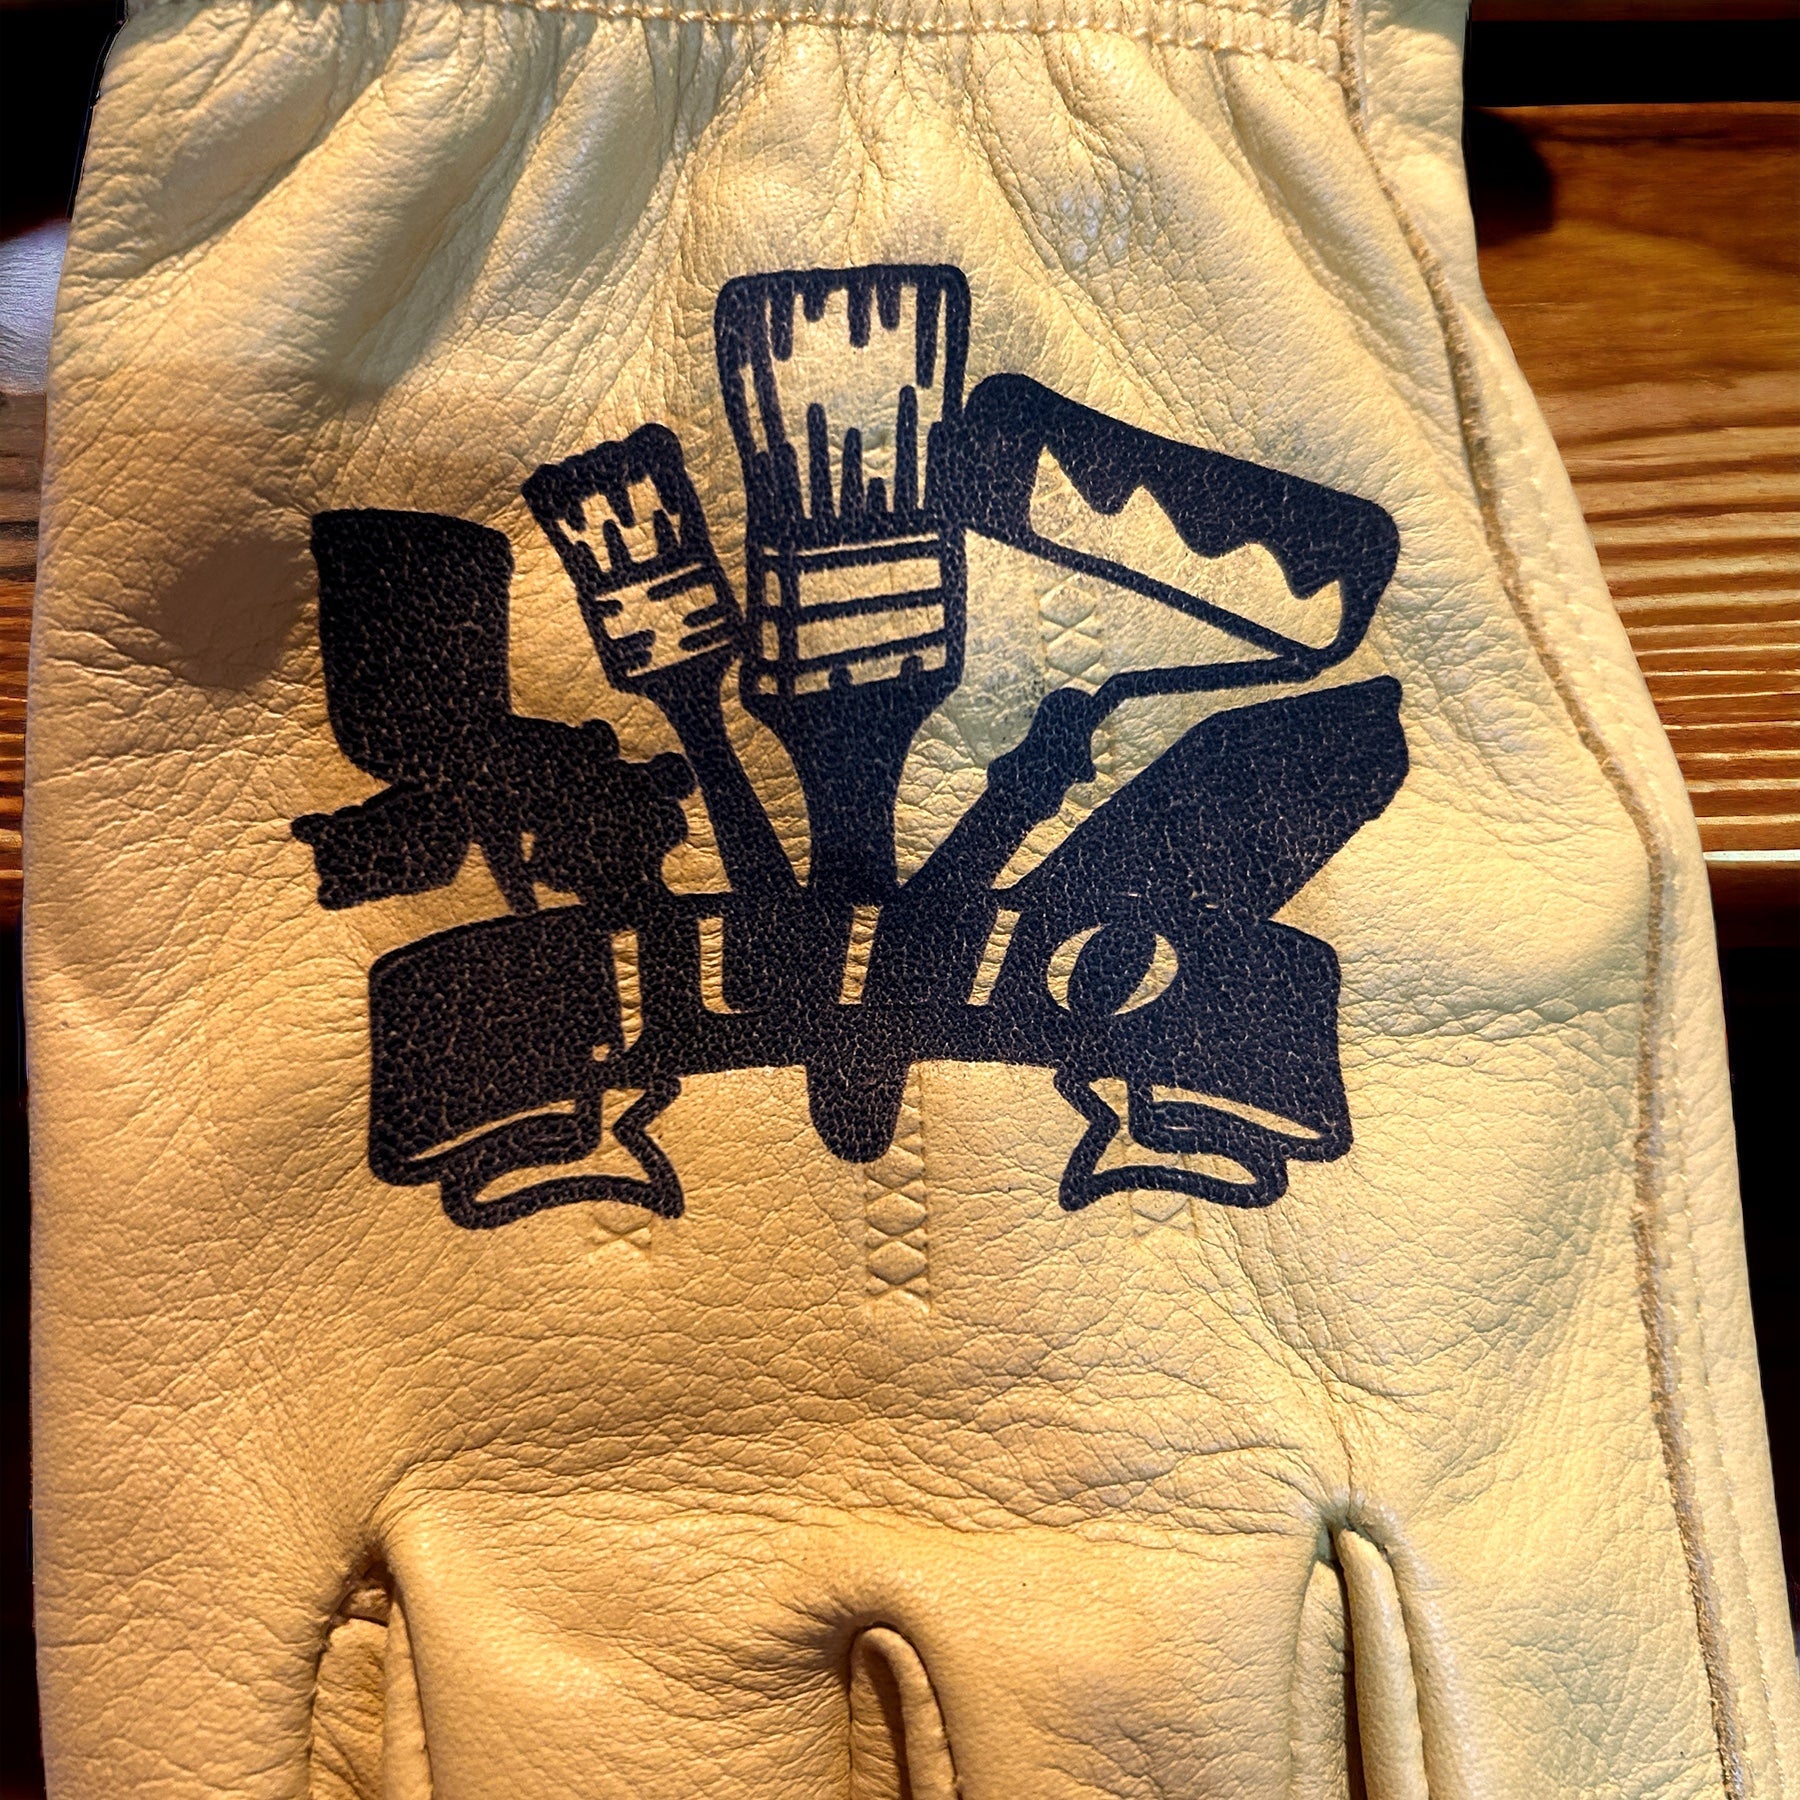 "Painter Themed" Custom Work Gloves Gloves weaver custom gloves   